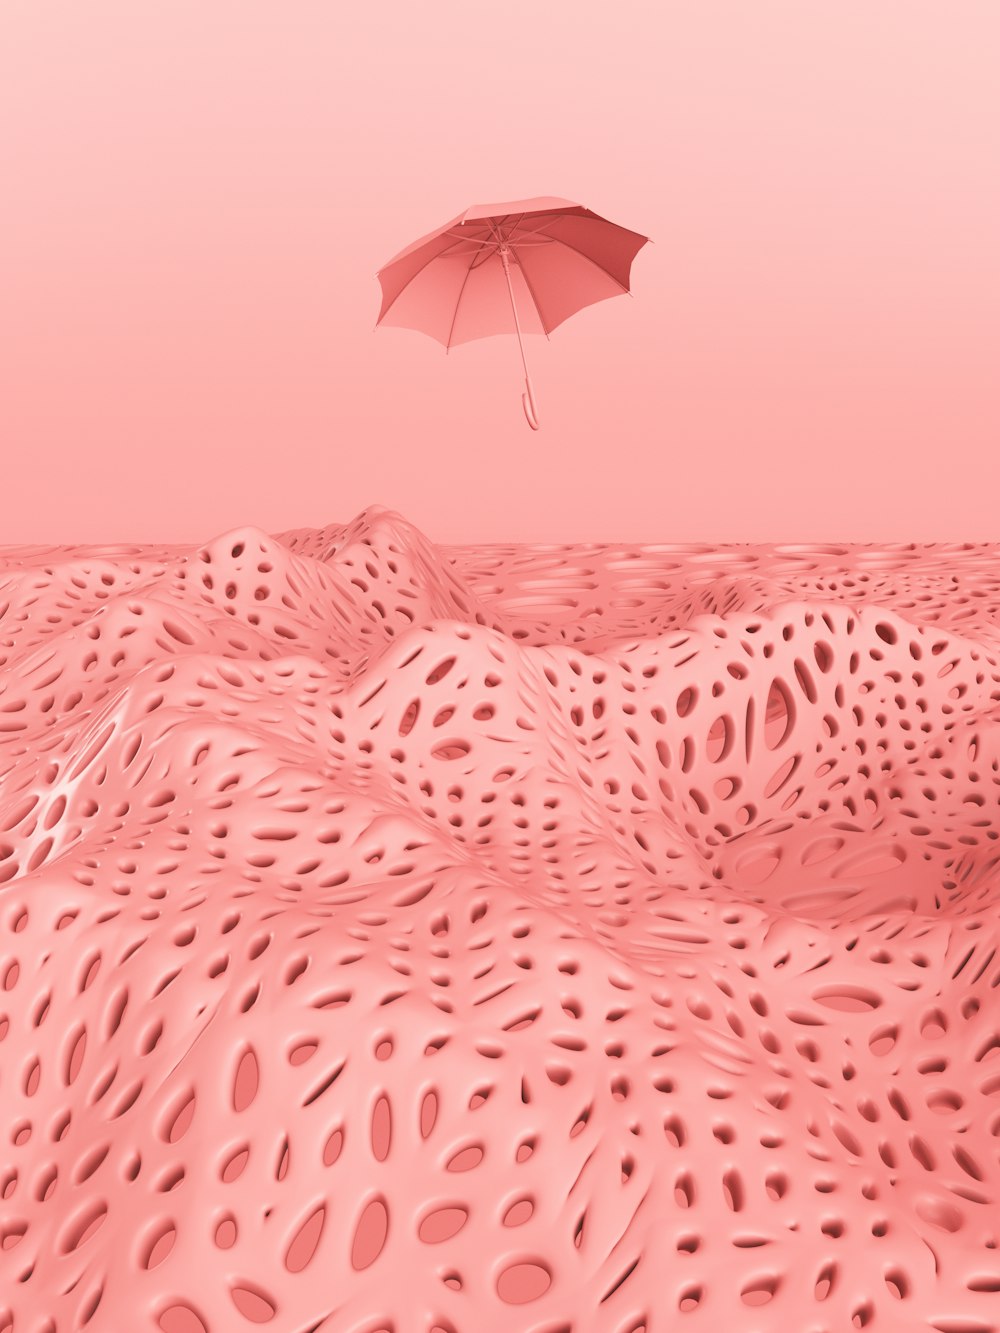 guarda-chuva cor-de-rosa no tecido branco e preto